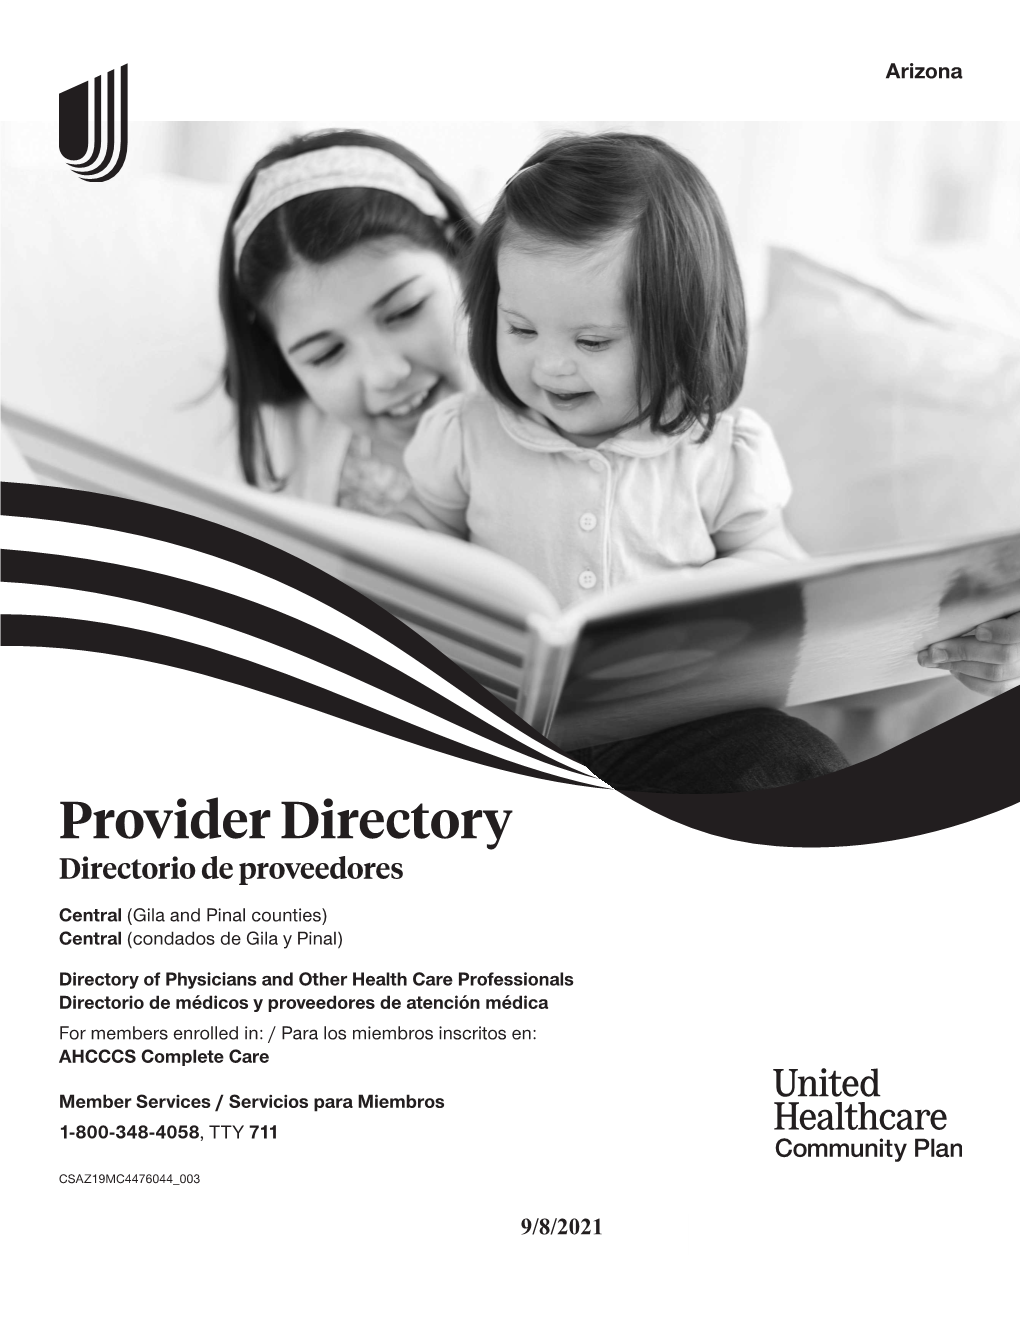 Provider Directory Directorio De Proveedores